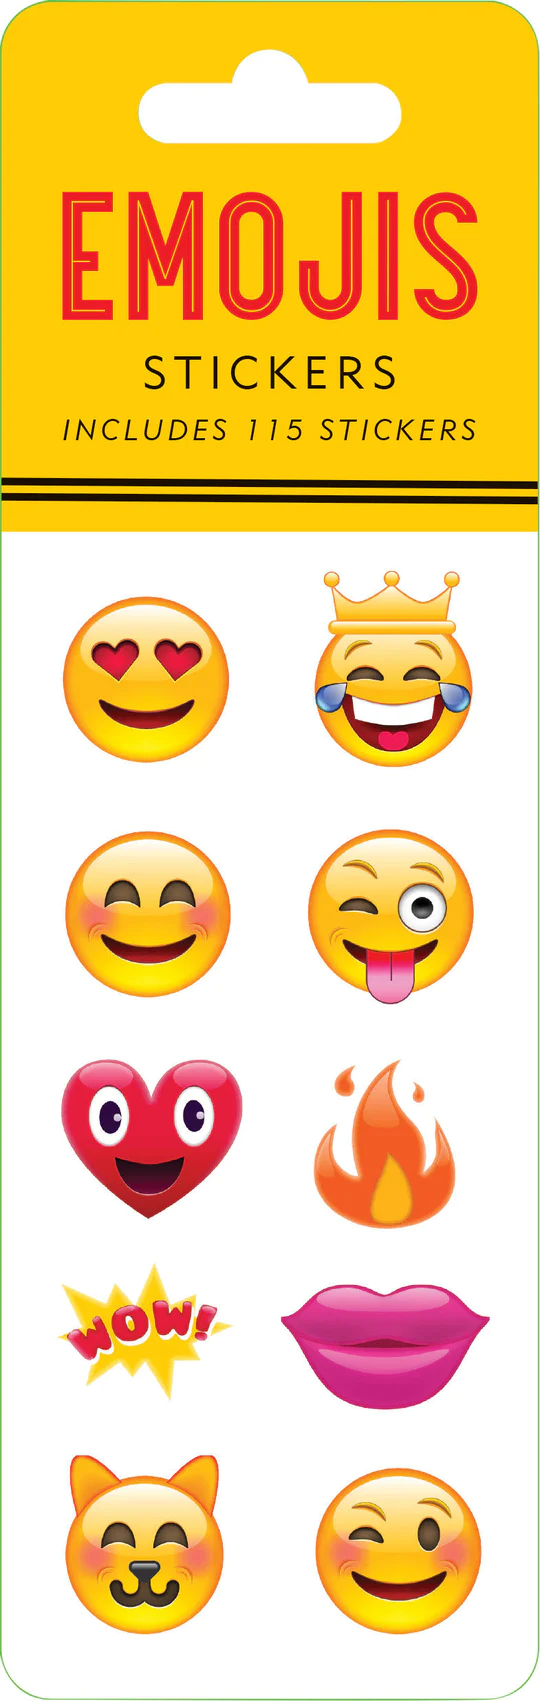 Sticker Sets- Emojis